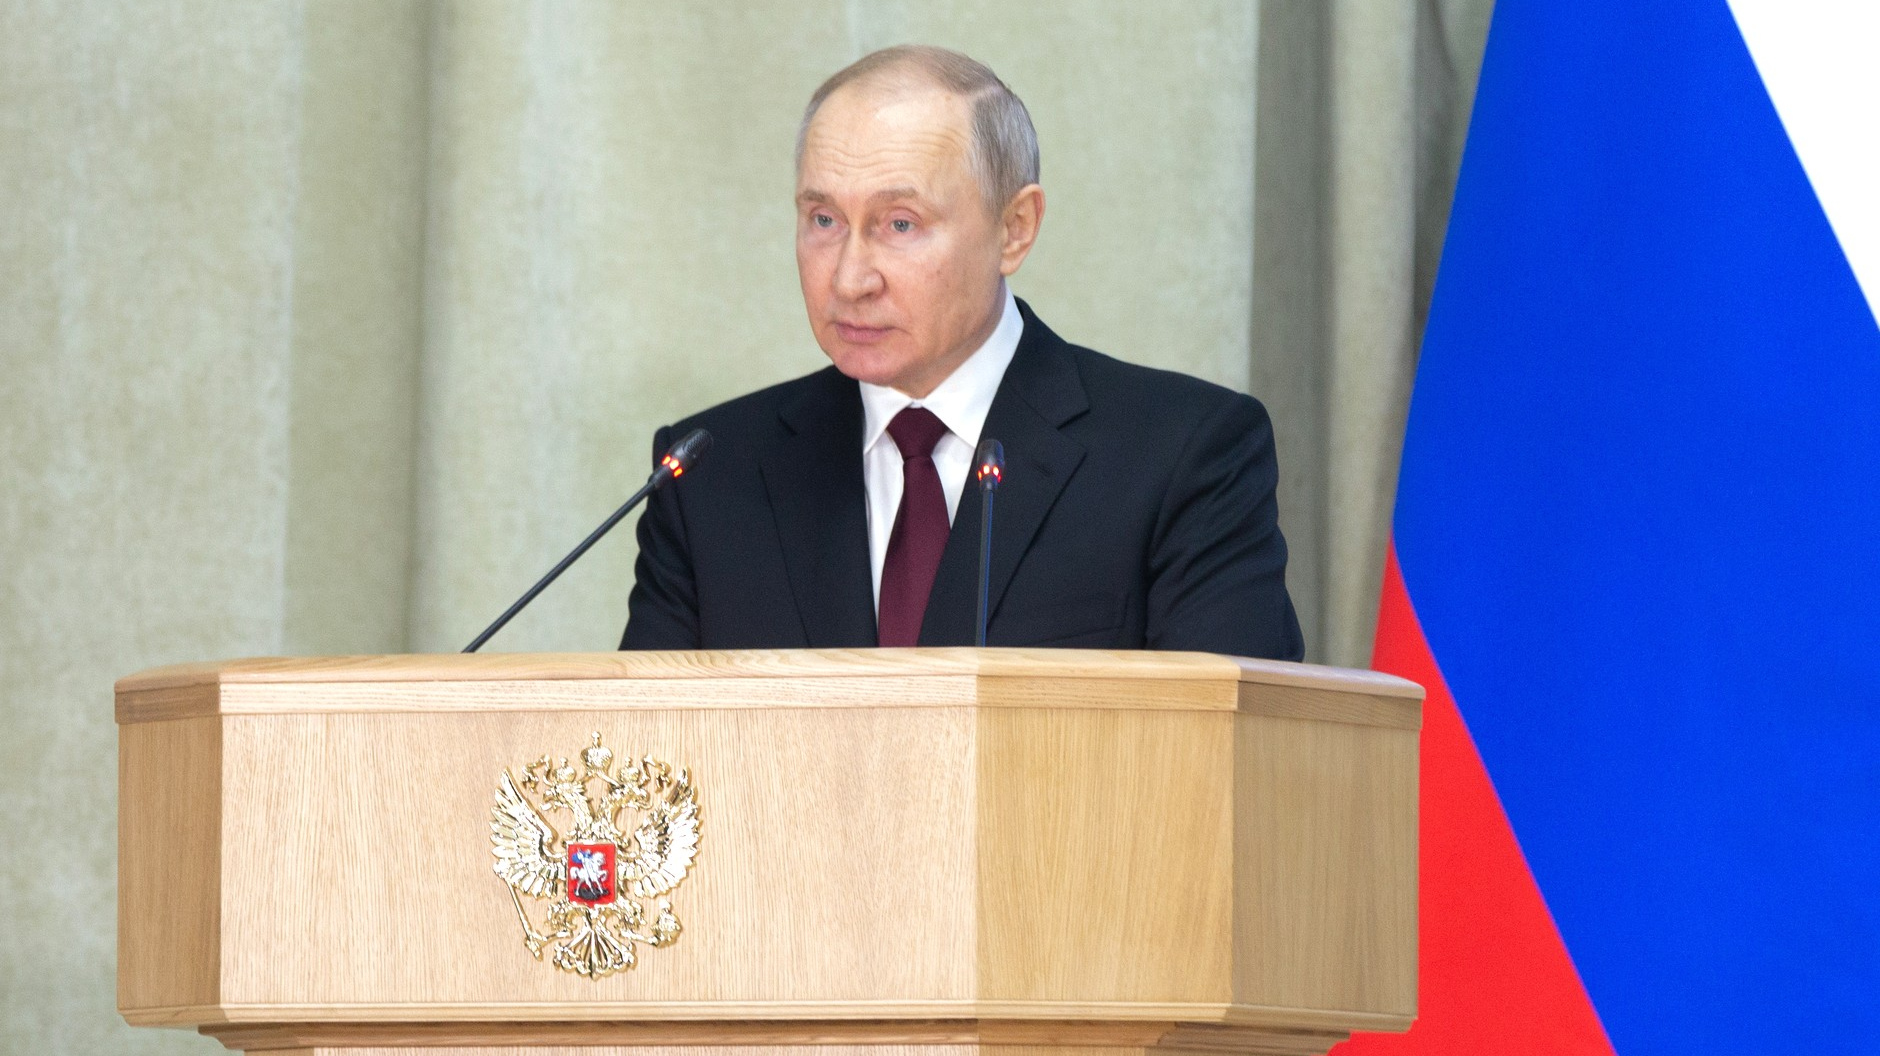 Президент России Владимир Путин на расширенном заседании коллегии Генеральной прокуратуры РФ